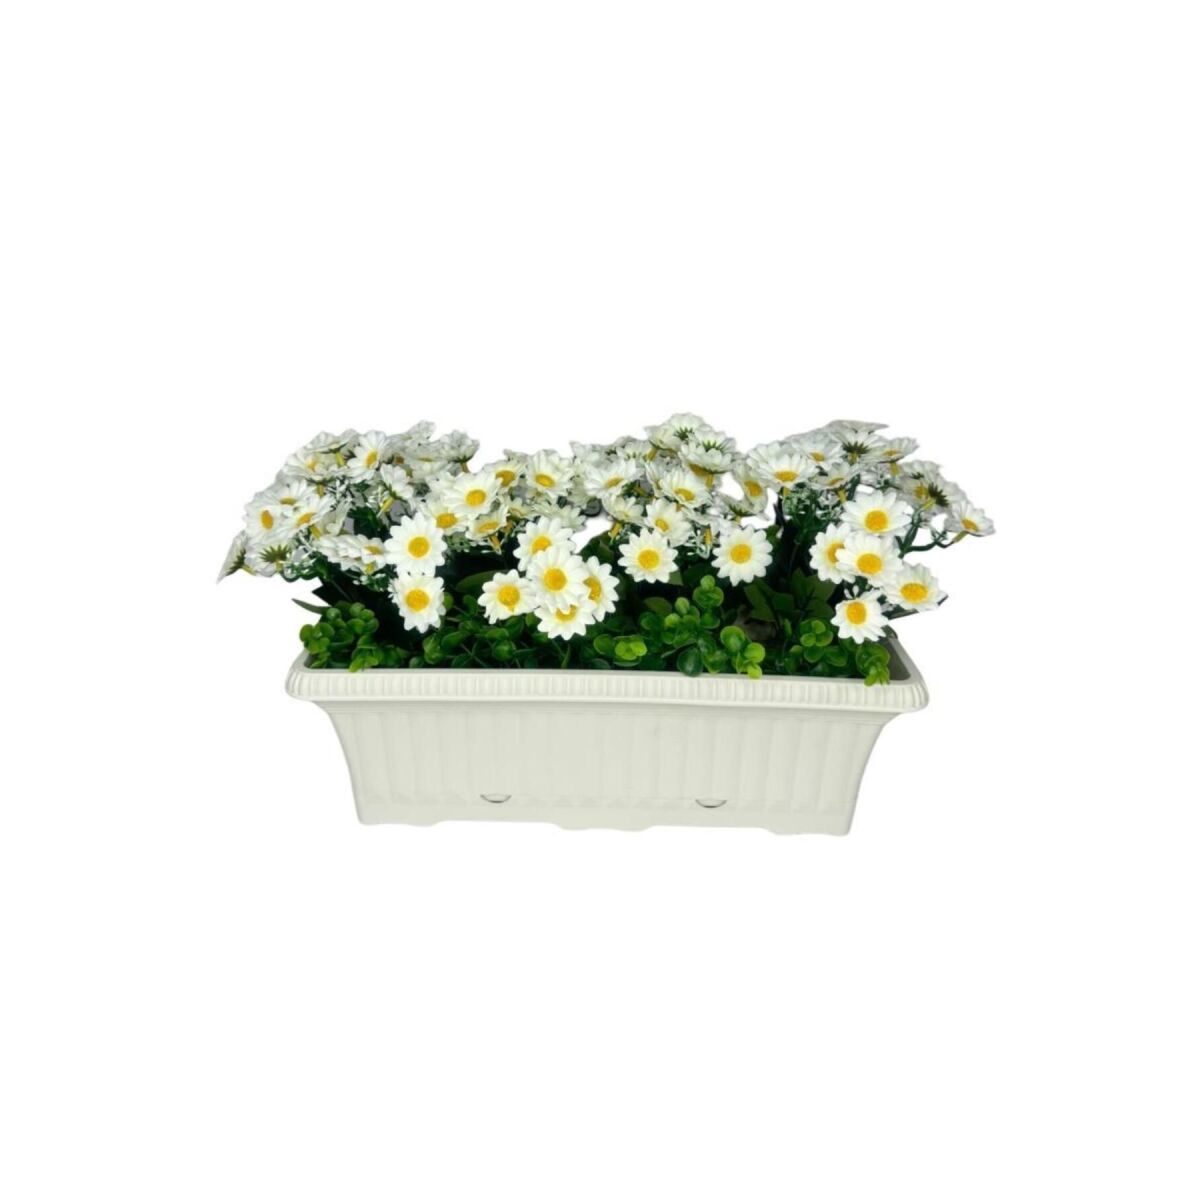 Yapay Çiçek Beyaz Papatya Küpeşte Askılı Saksıda Balkon Çiçeği Çiçek Sepeti